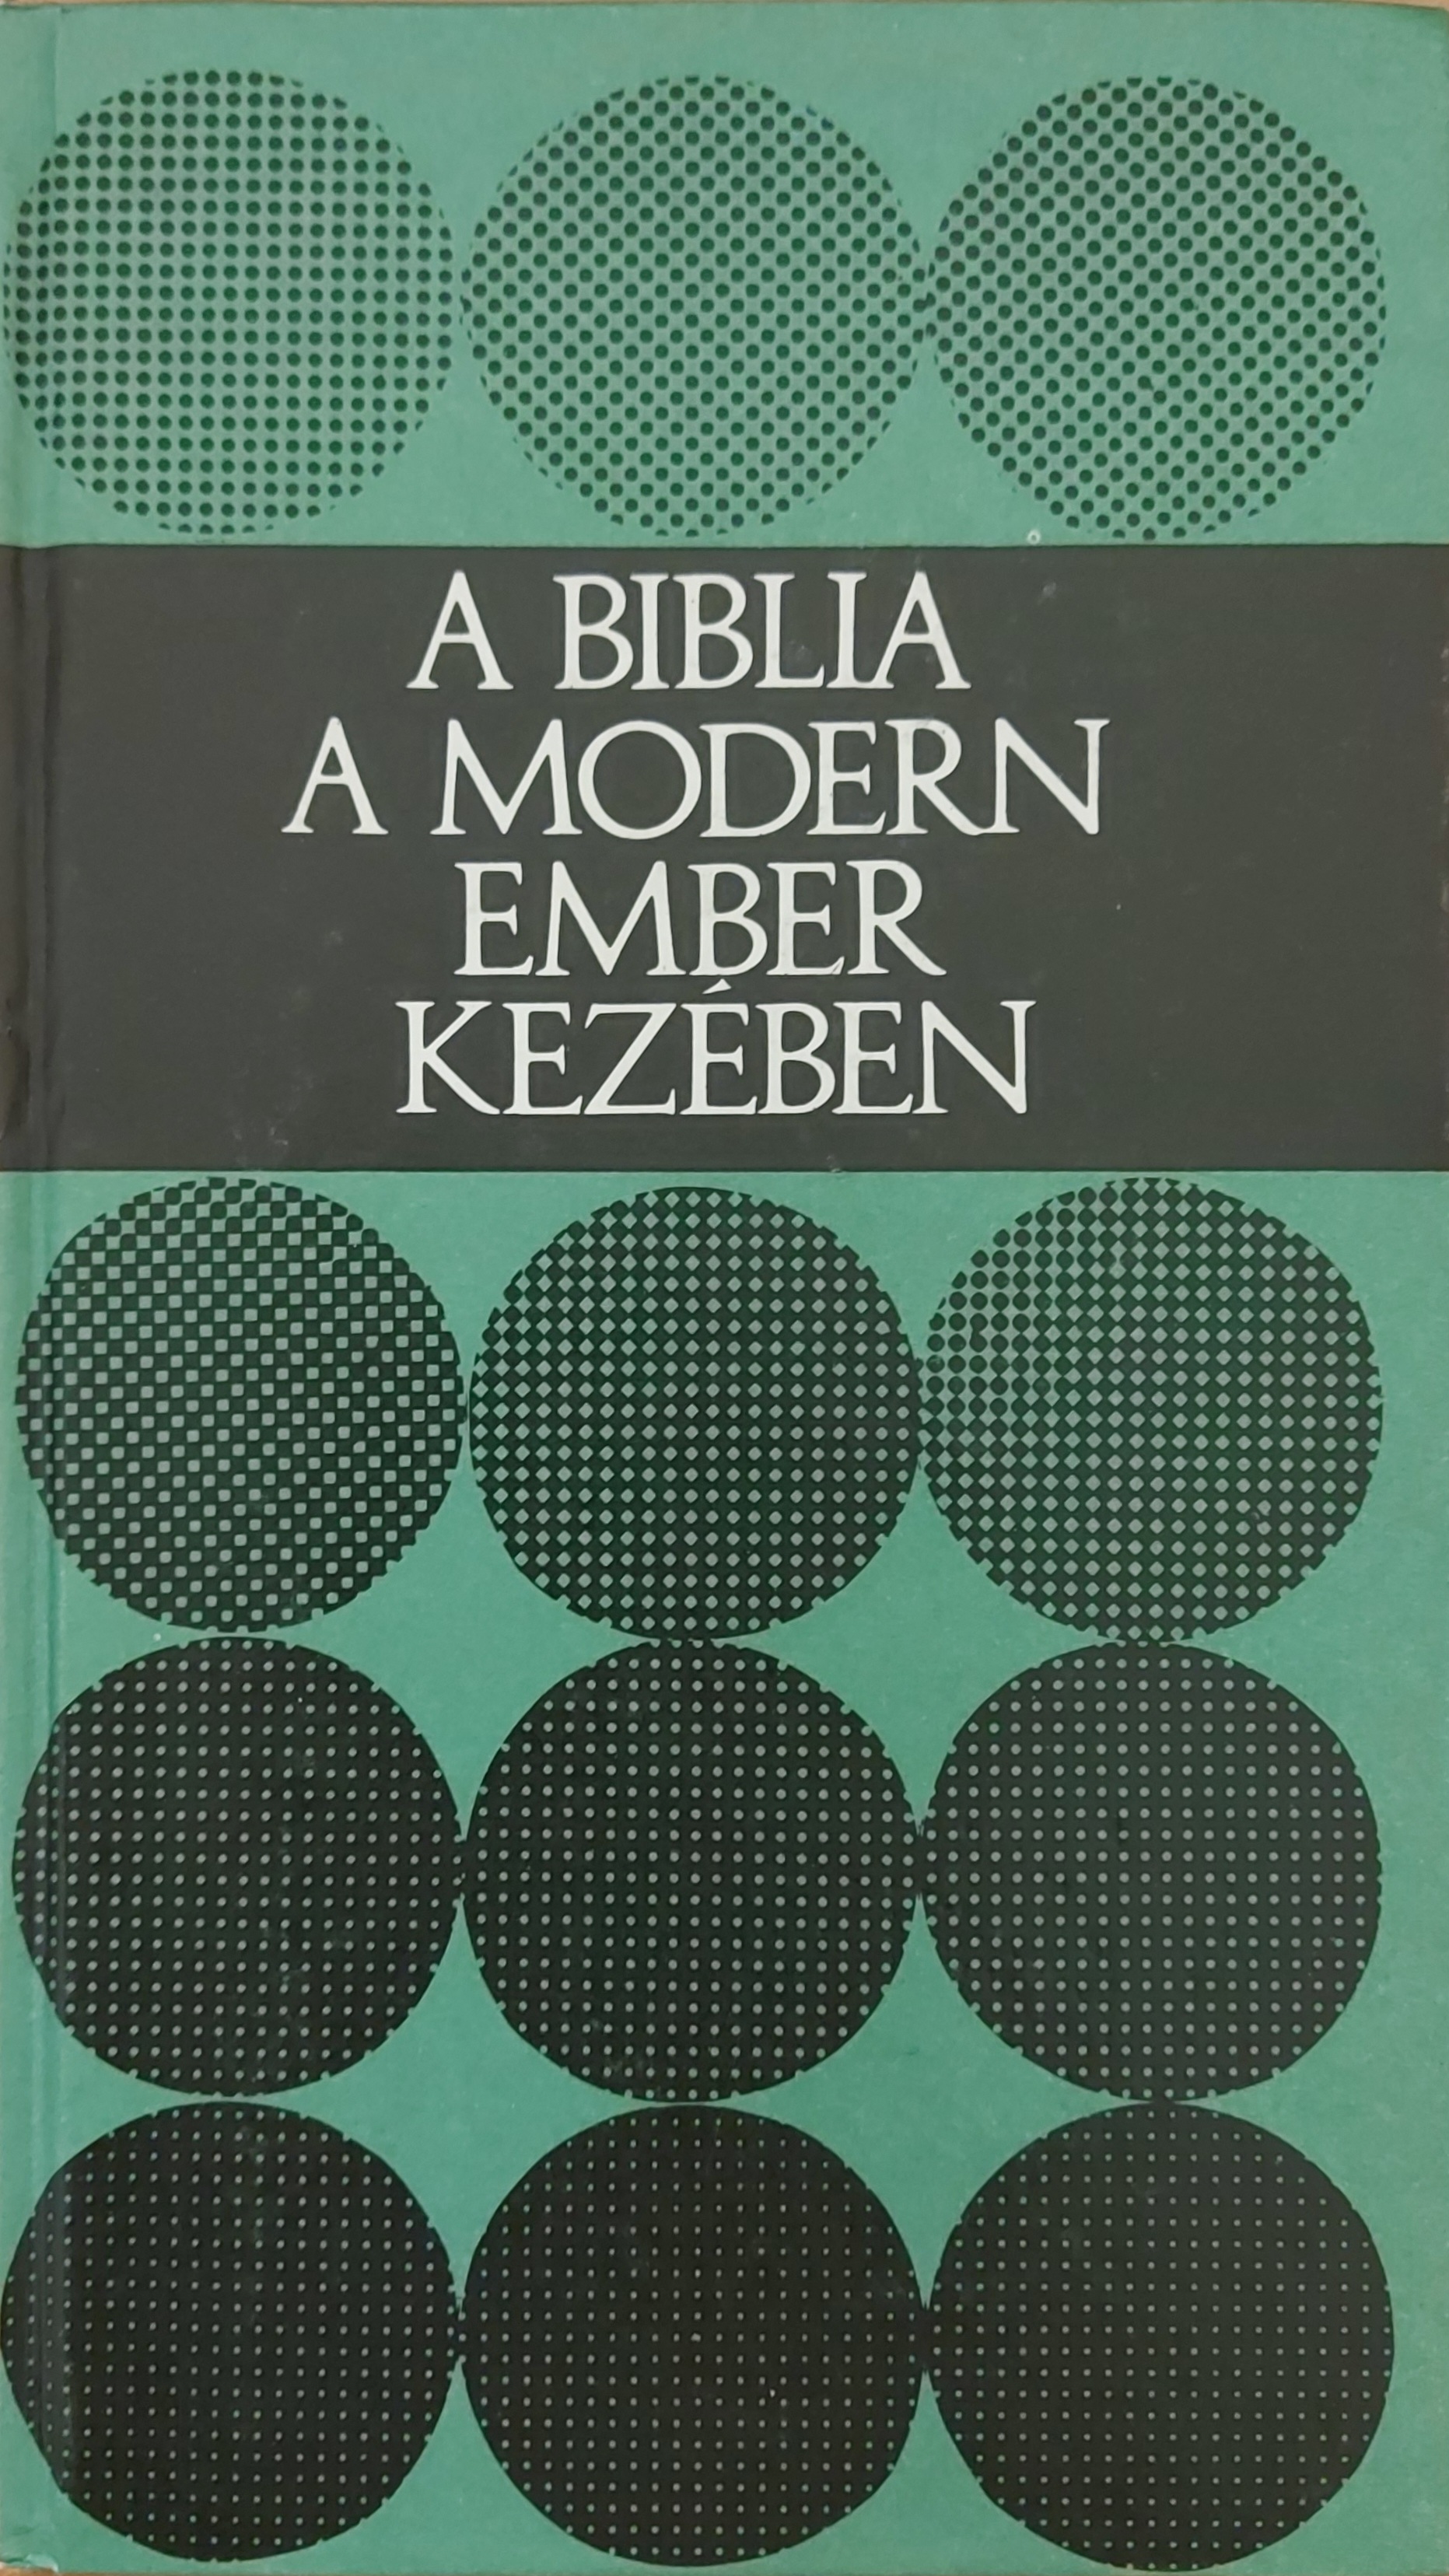 A Biblia a modern ember kezében